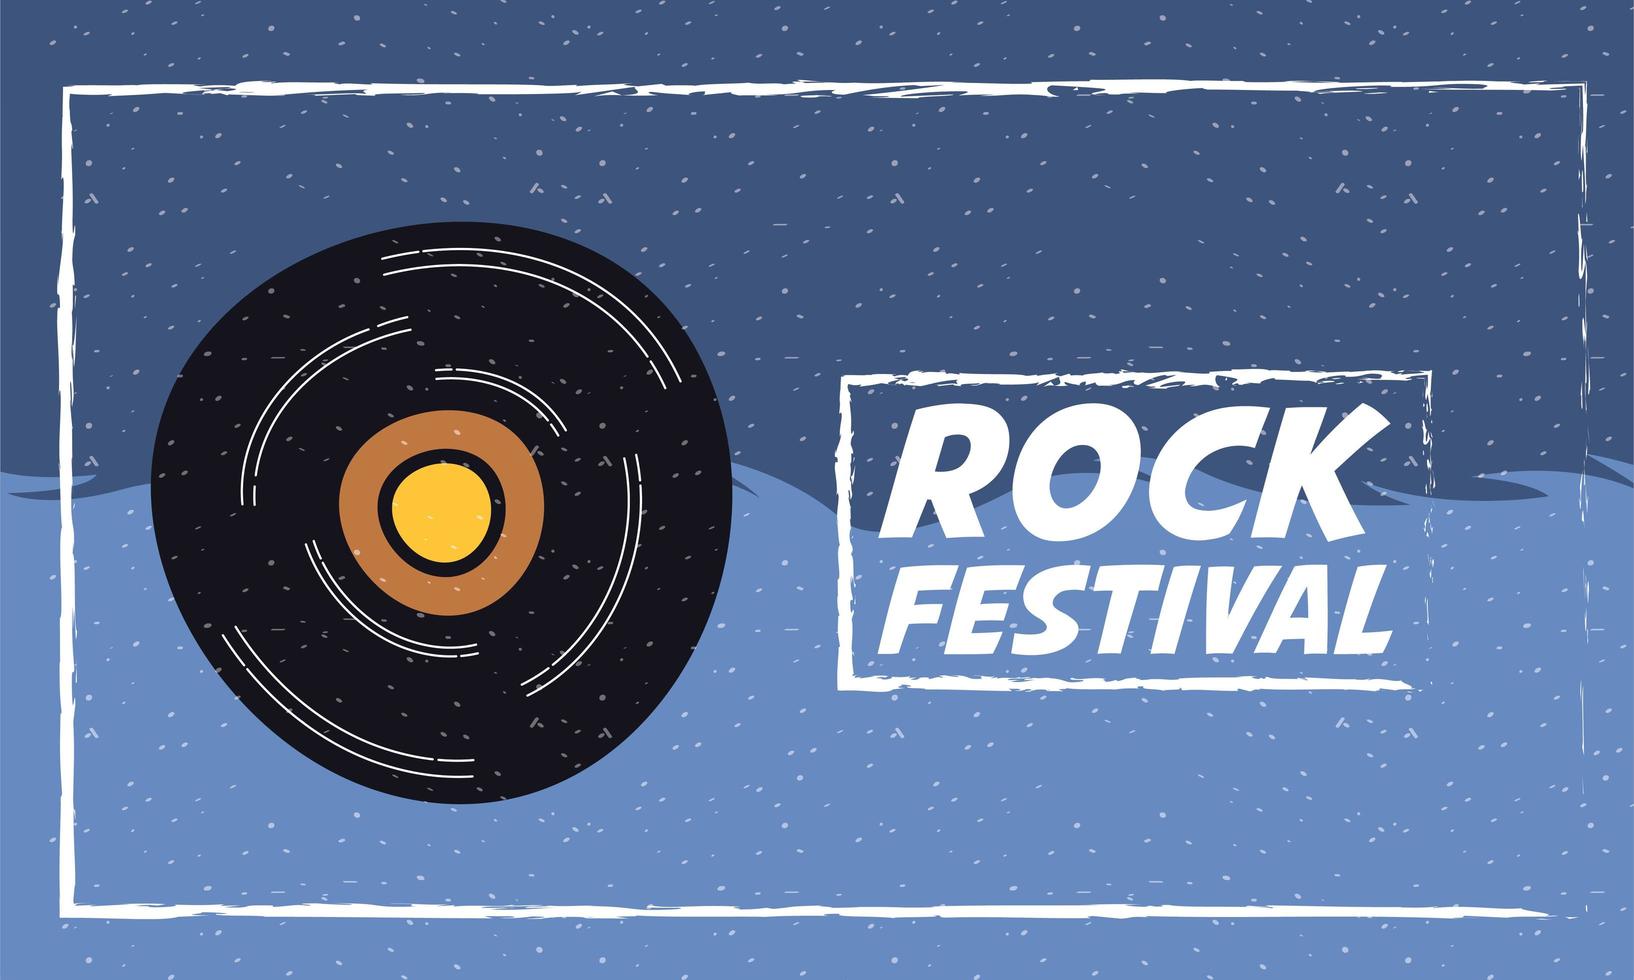 Rock Festival Unterhaltung Einladungsplakat vektor